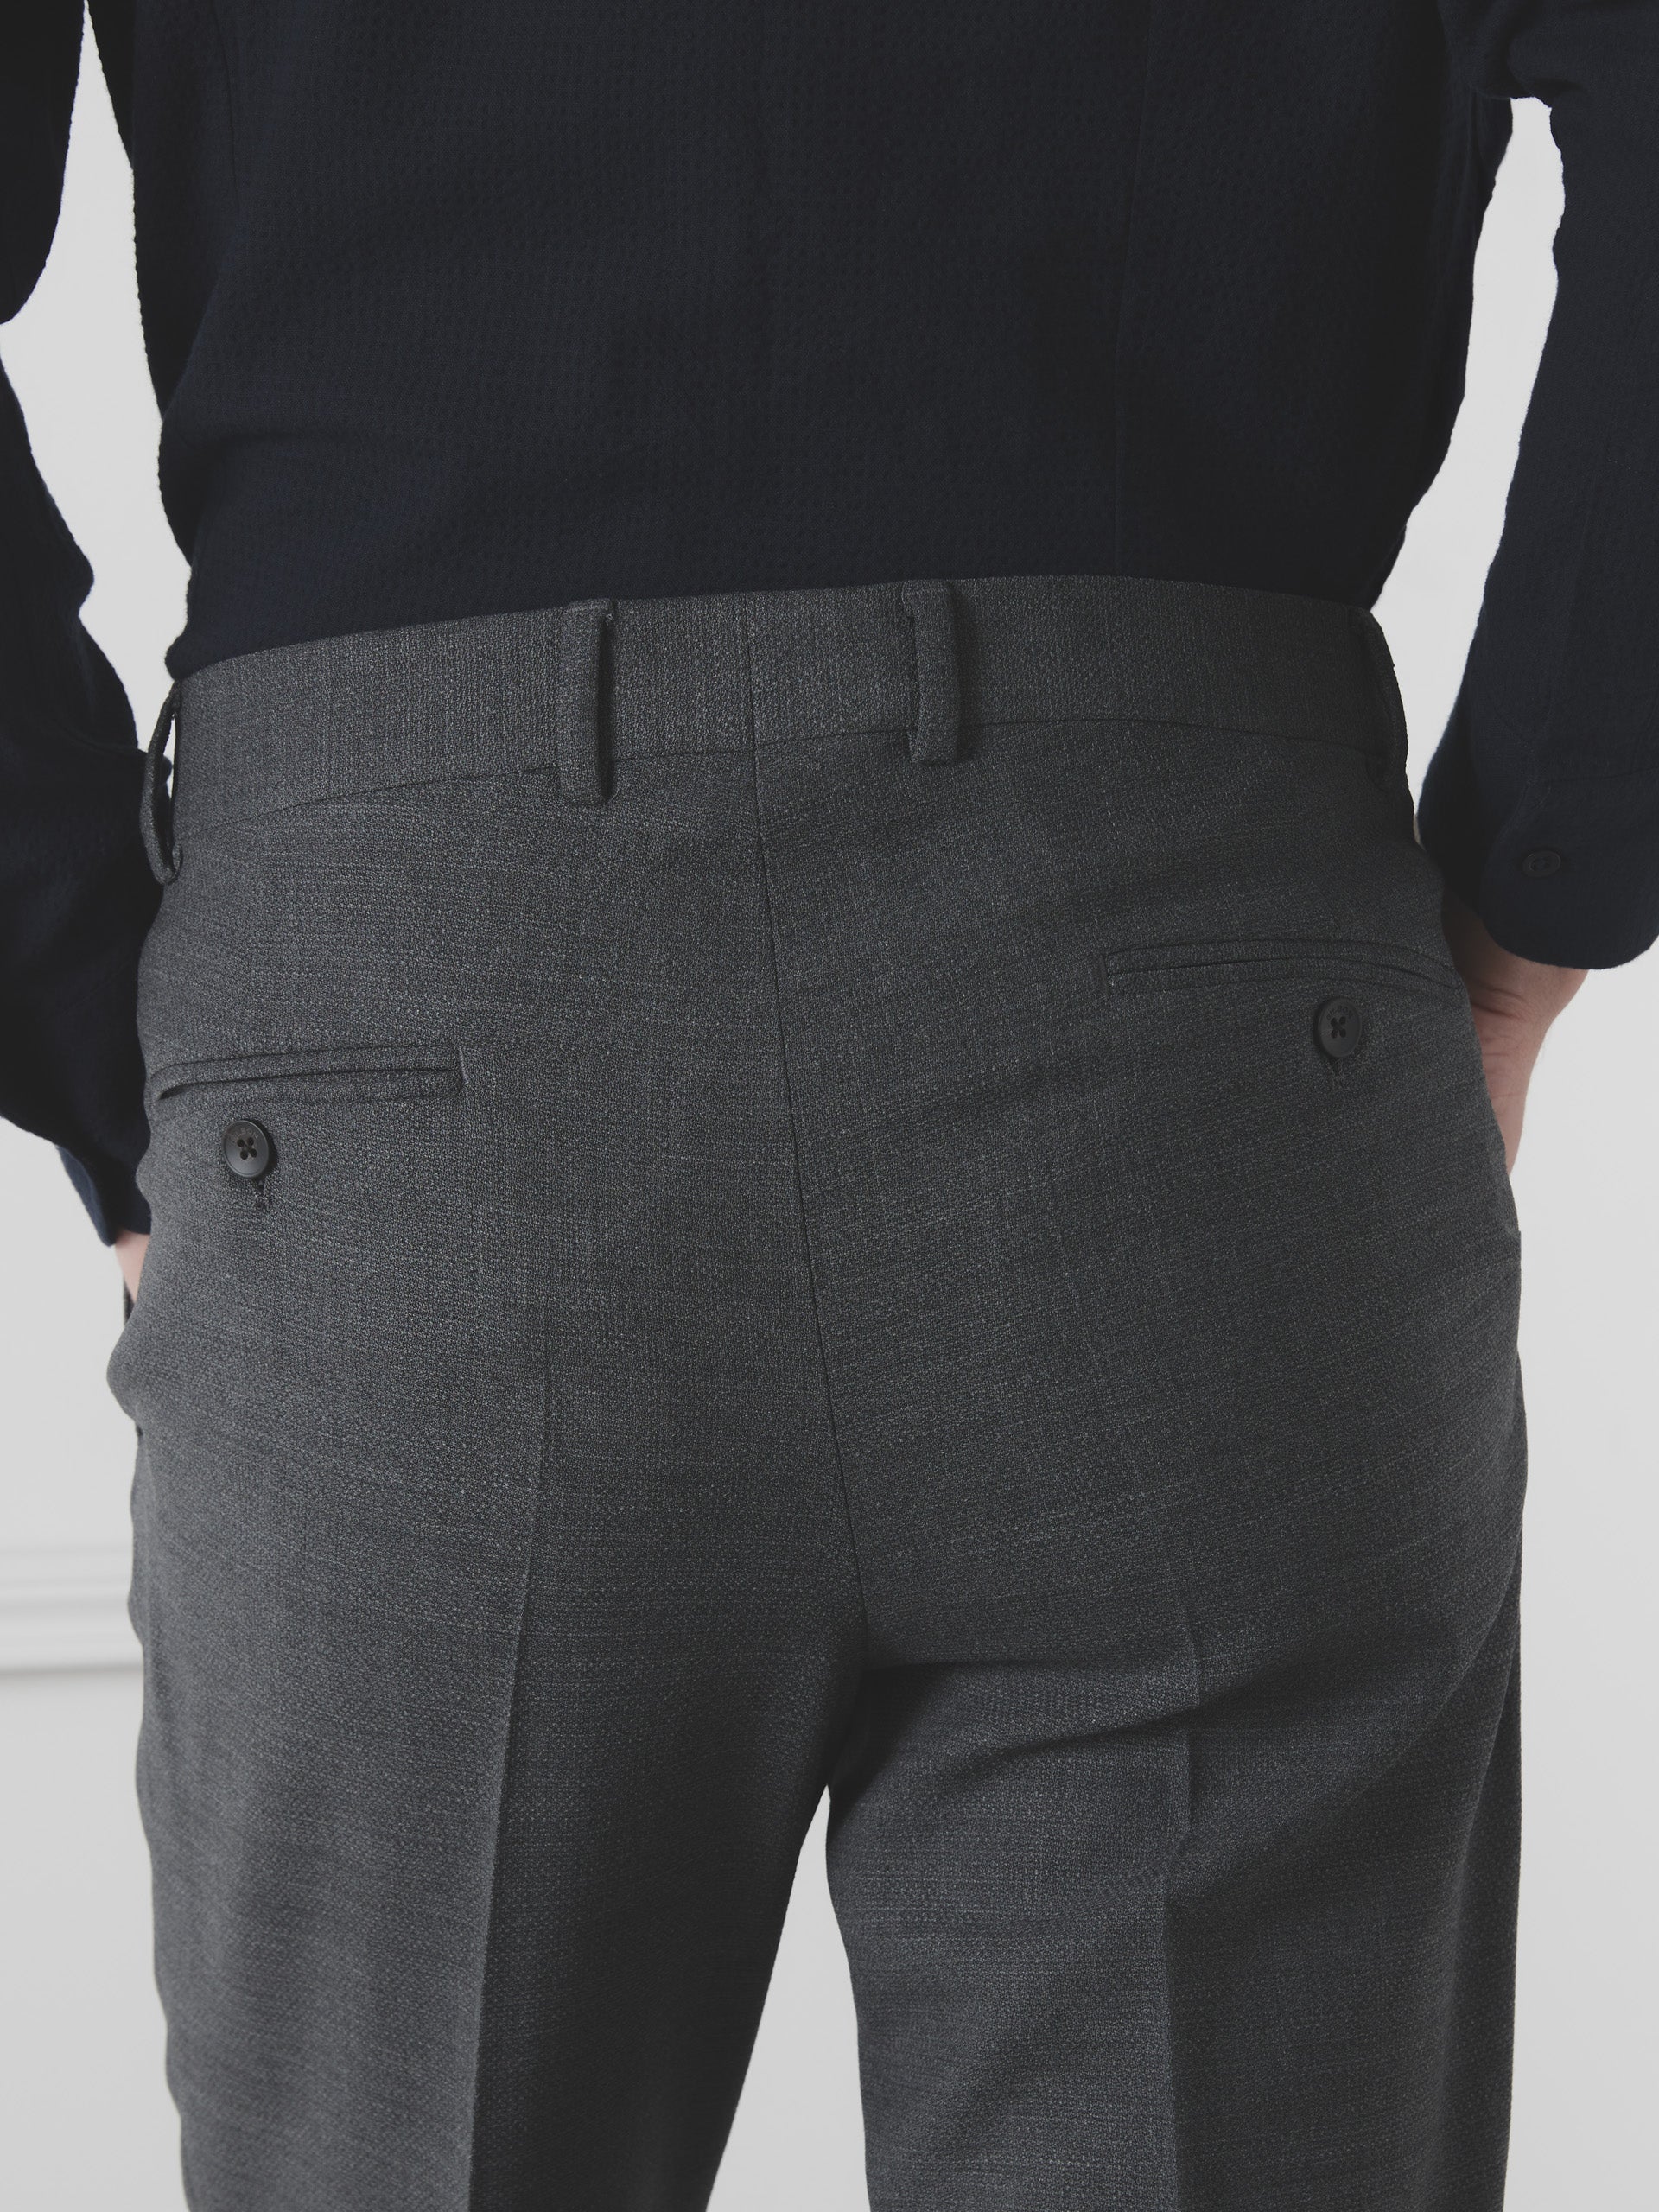 Silbon unique gray suit pants